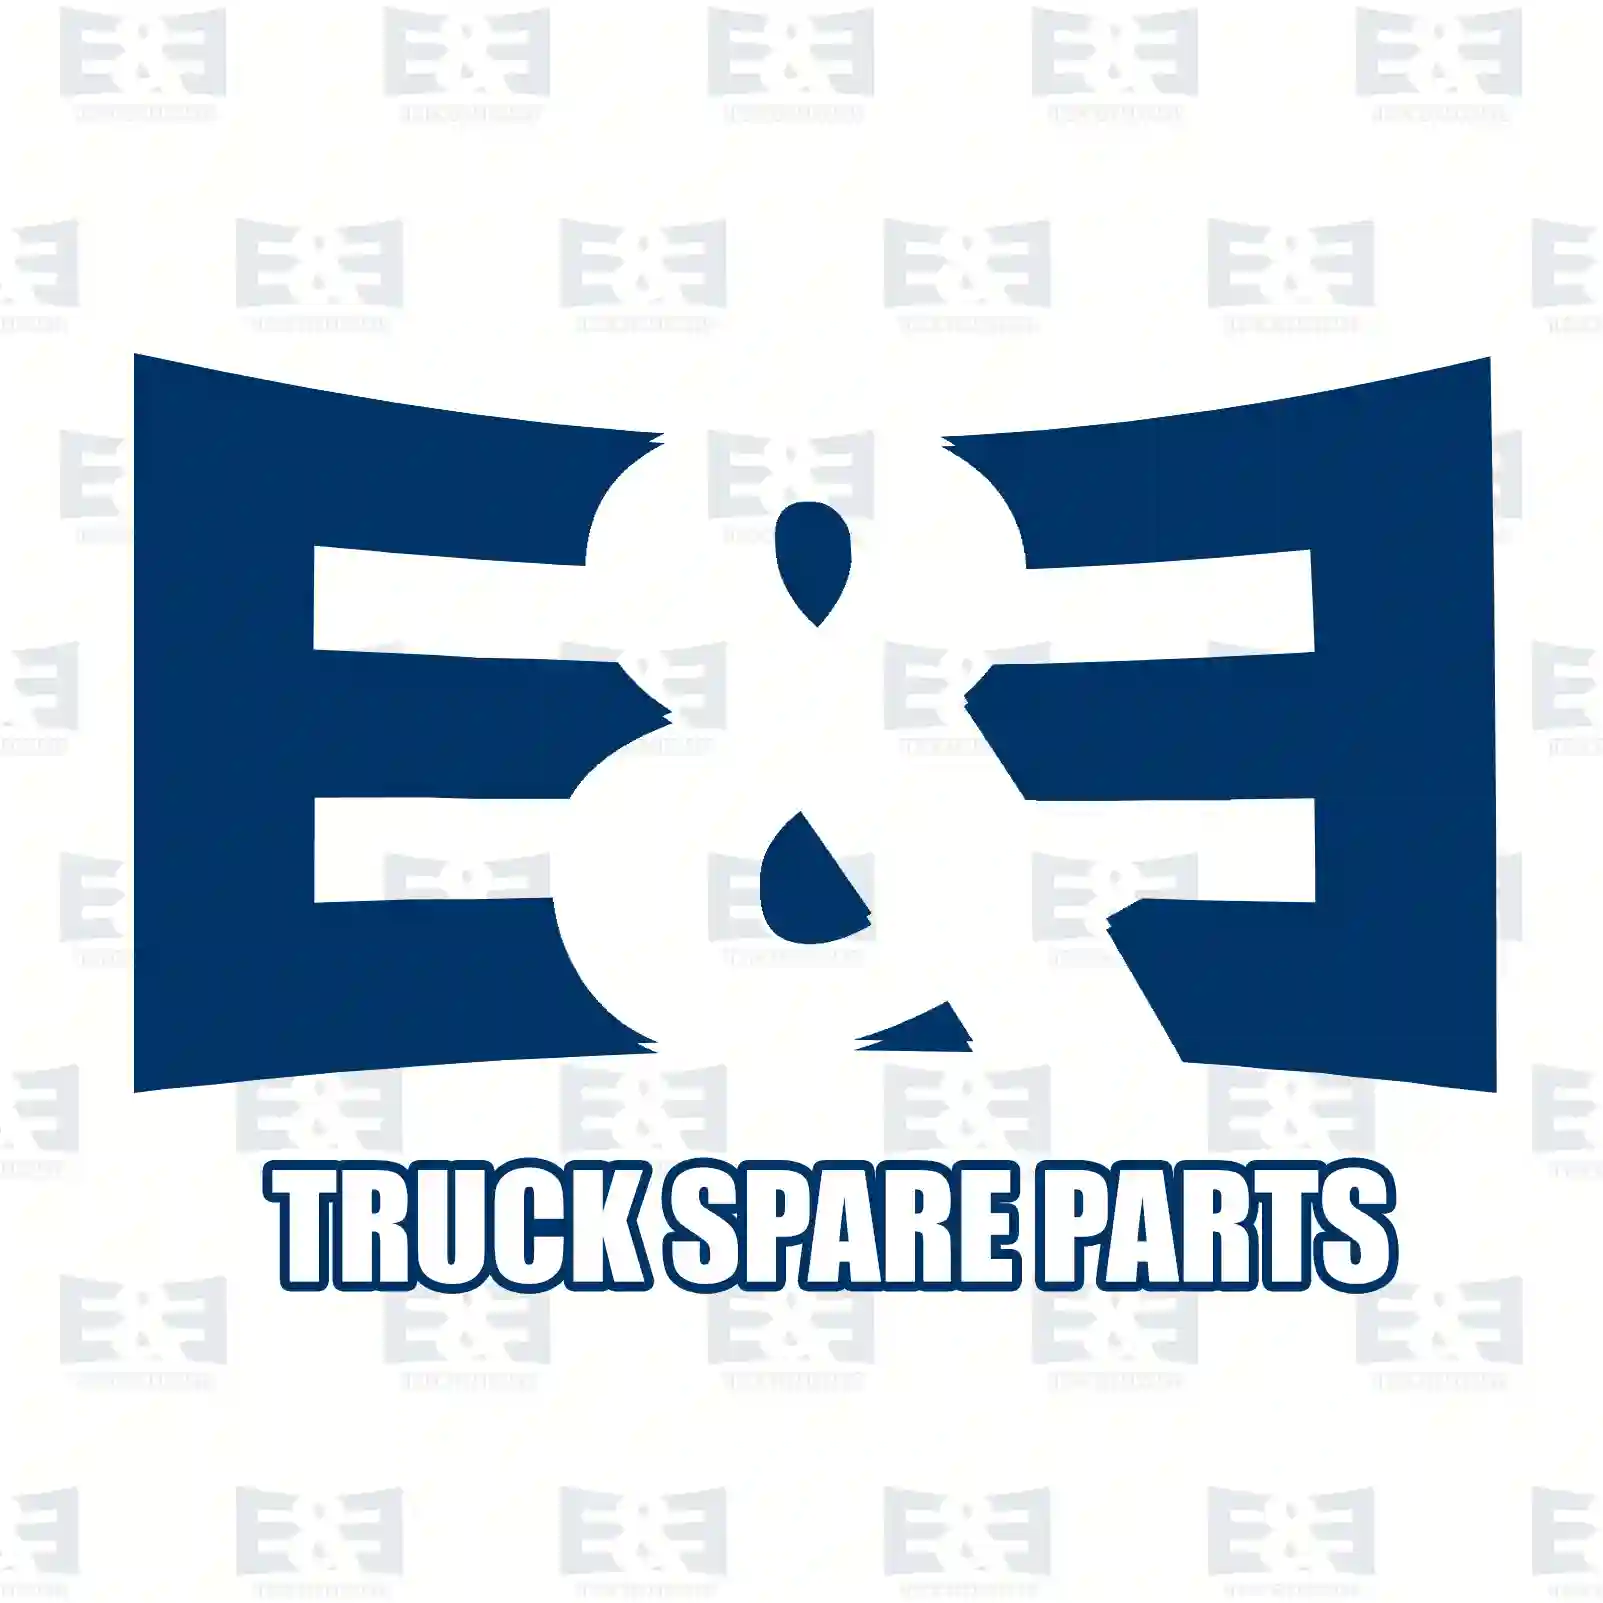 Wiper nozzle, 2E2293198, 3228690047, ZG21332-0008 ||  2E2293198 E&E Truck Spare Parts | Truck Spare Parts, Auotomotive Spare Parts Wiper nozzle, 2E2293198, 3228690047, ZG21332-0008 ||  2E2293198 E&E Truck Spare Parts | Truck Spare Parts, Auotomotive Spare Parts